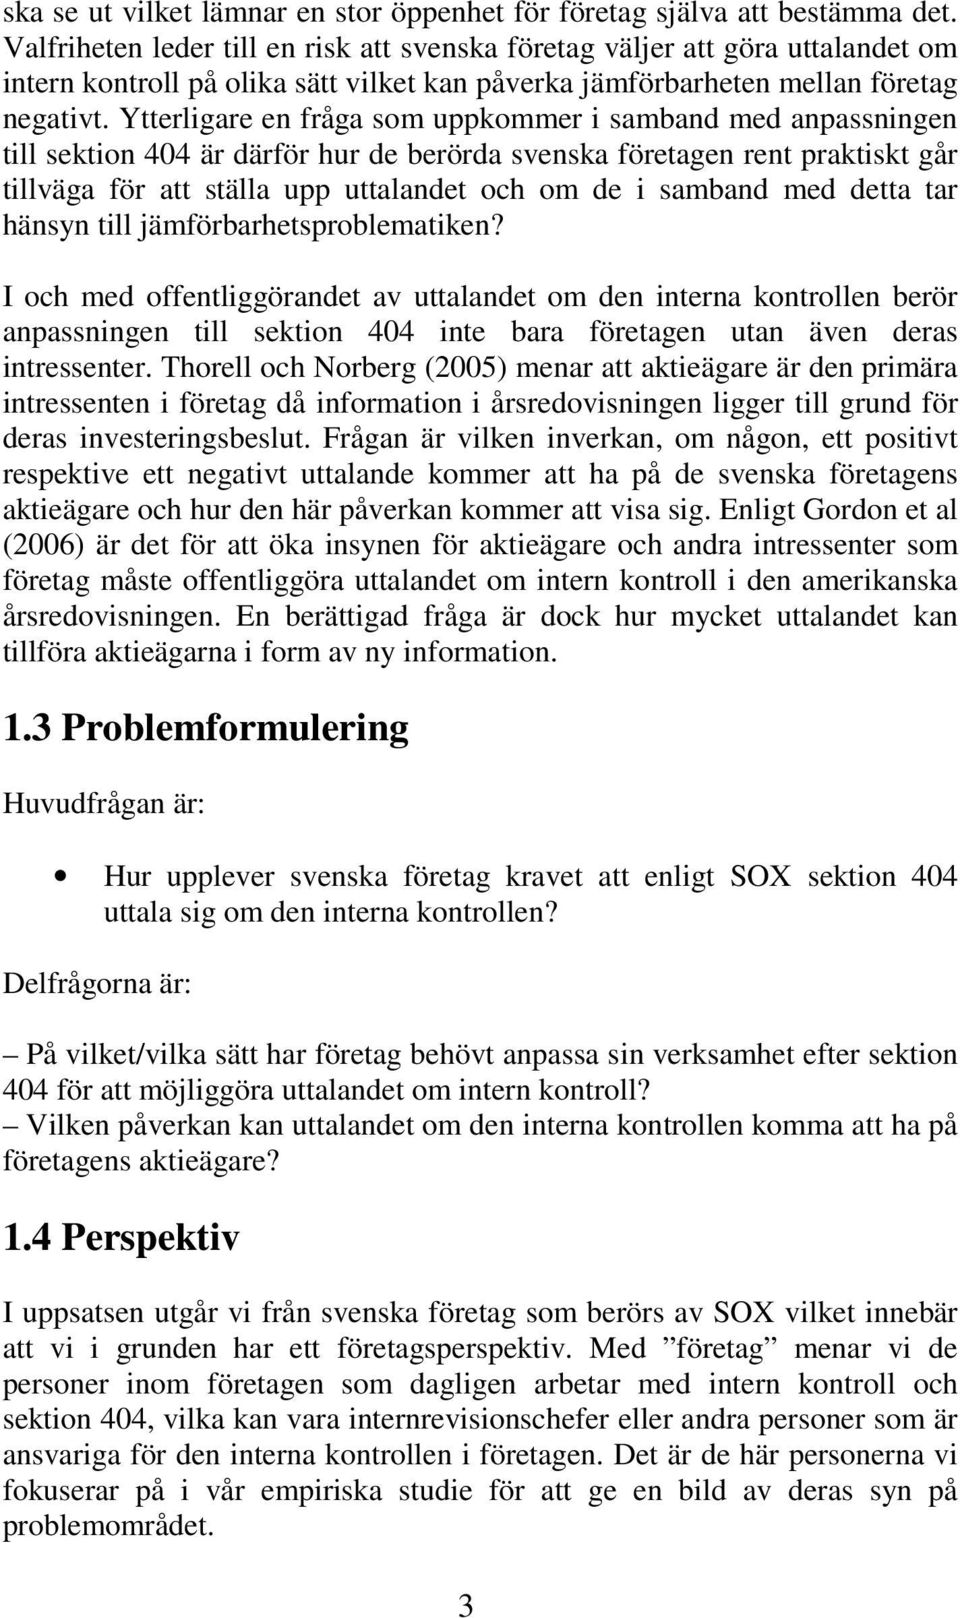 Ytterligare en fråga som uppkommer i samband med anpassningen till sektion 404 är därför hur de berörda svenska företagen rent praktiskt går tillväga för att ställa upp uttalandet och om de i samband